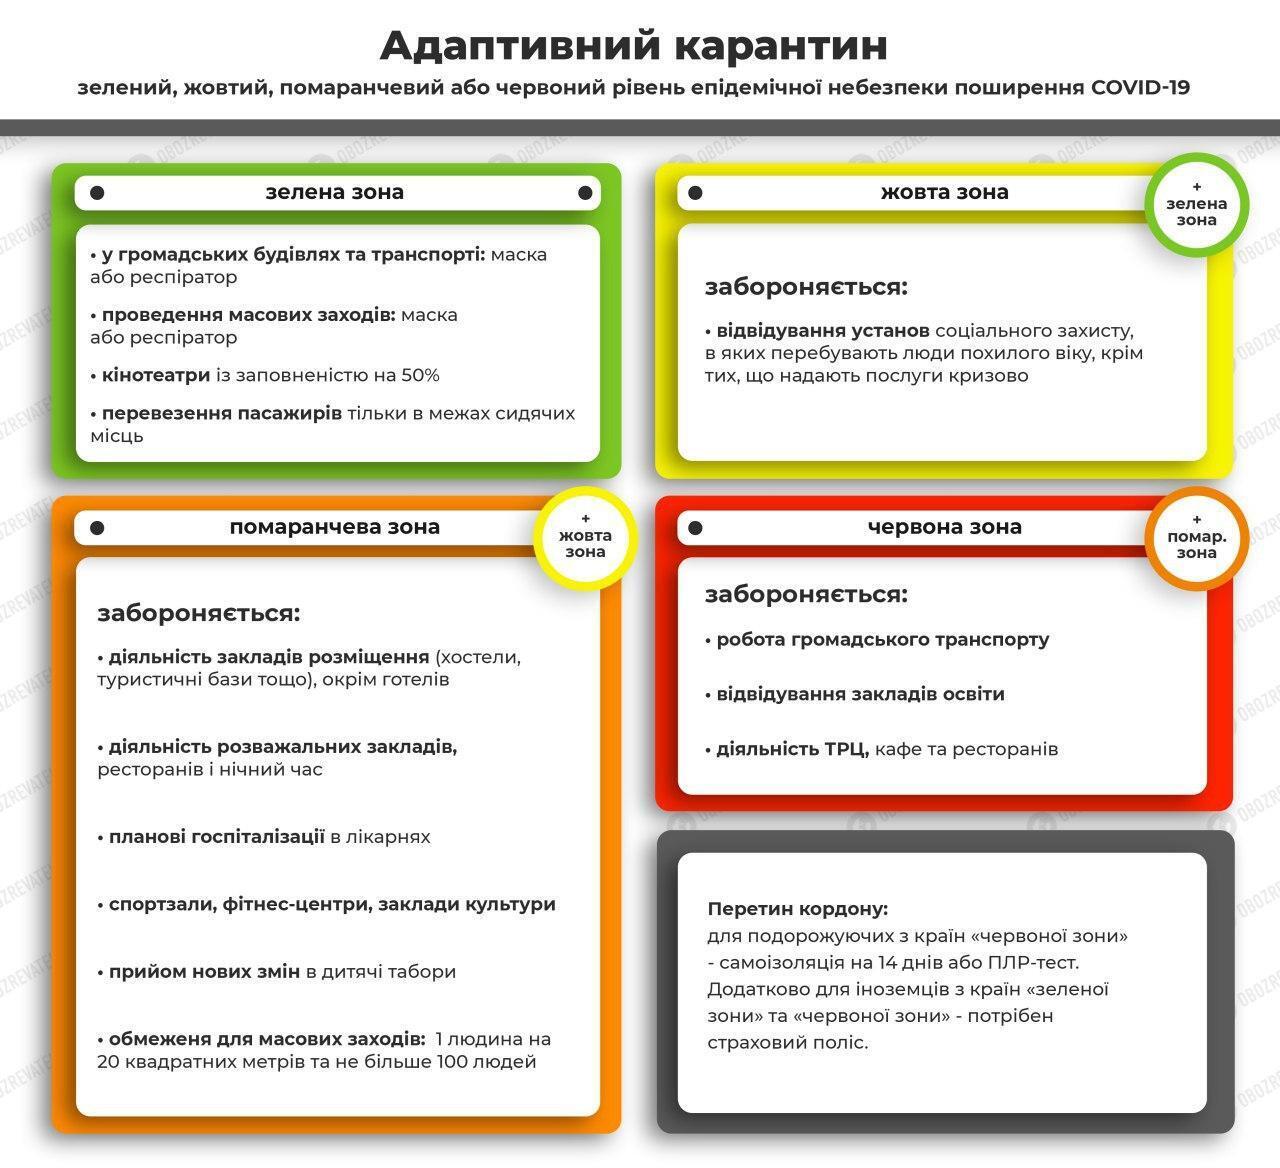 Заборони, які діють в чотирьох карантинних зонах України.